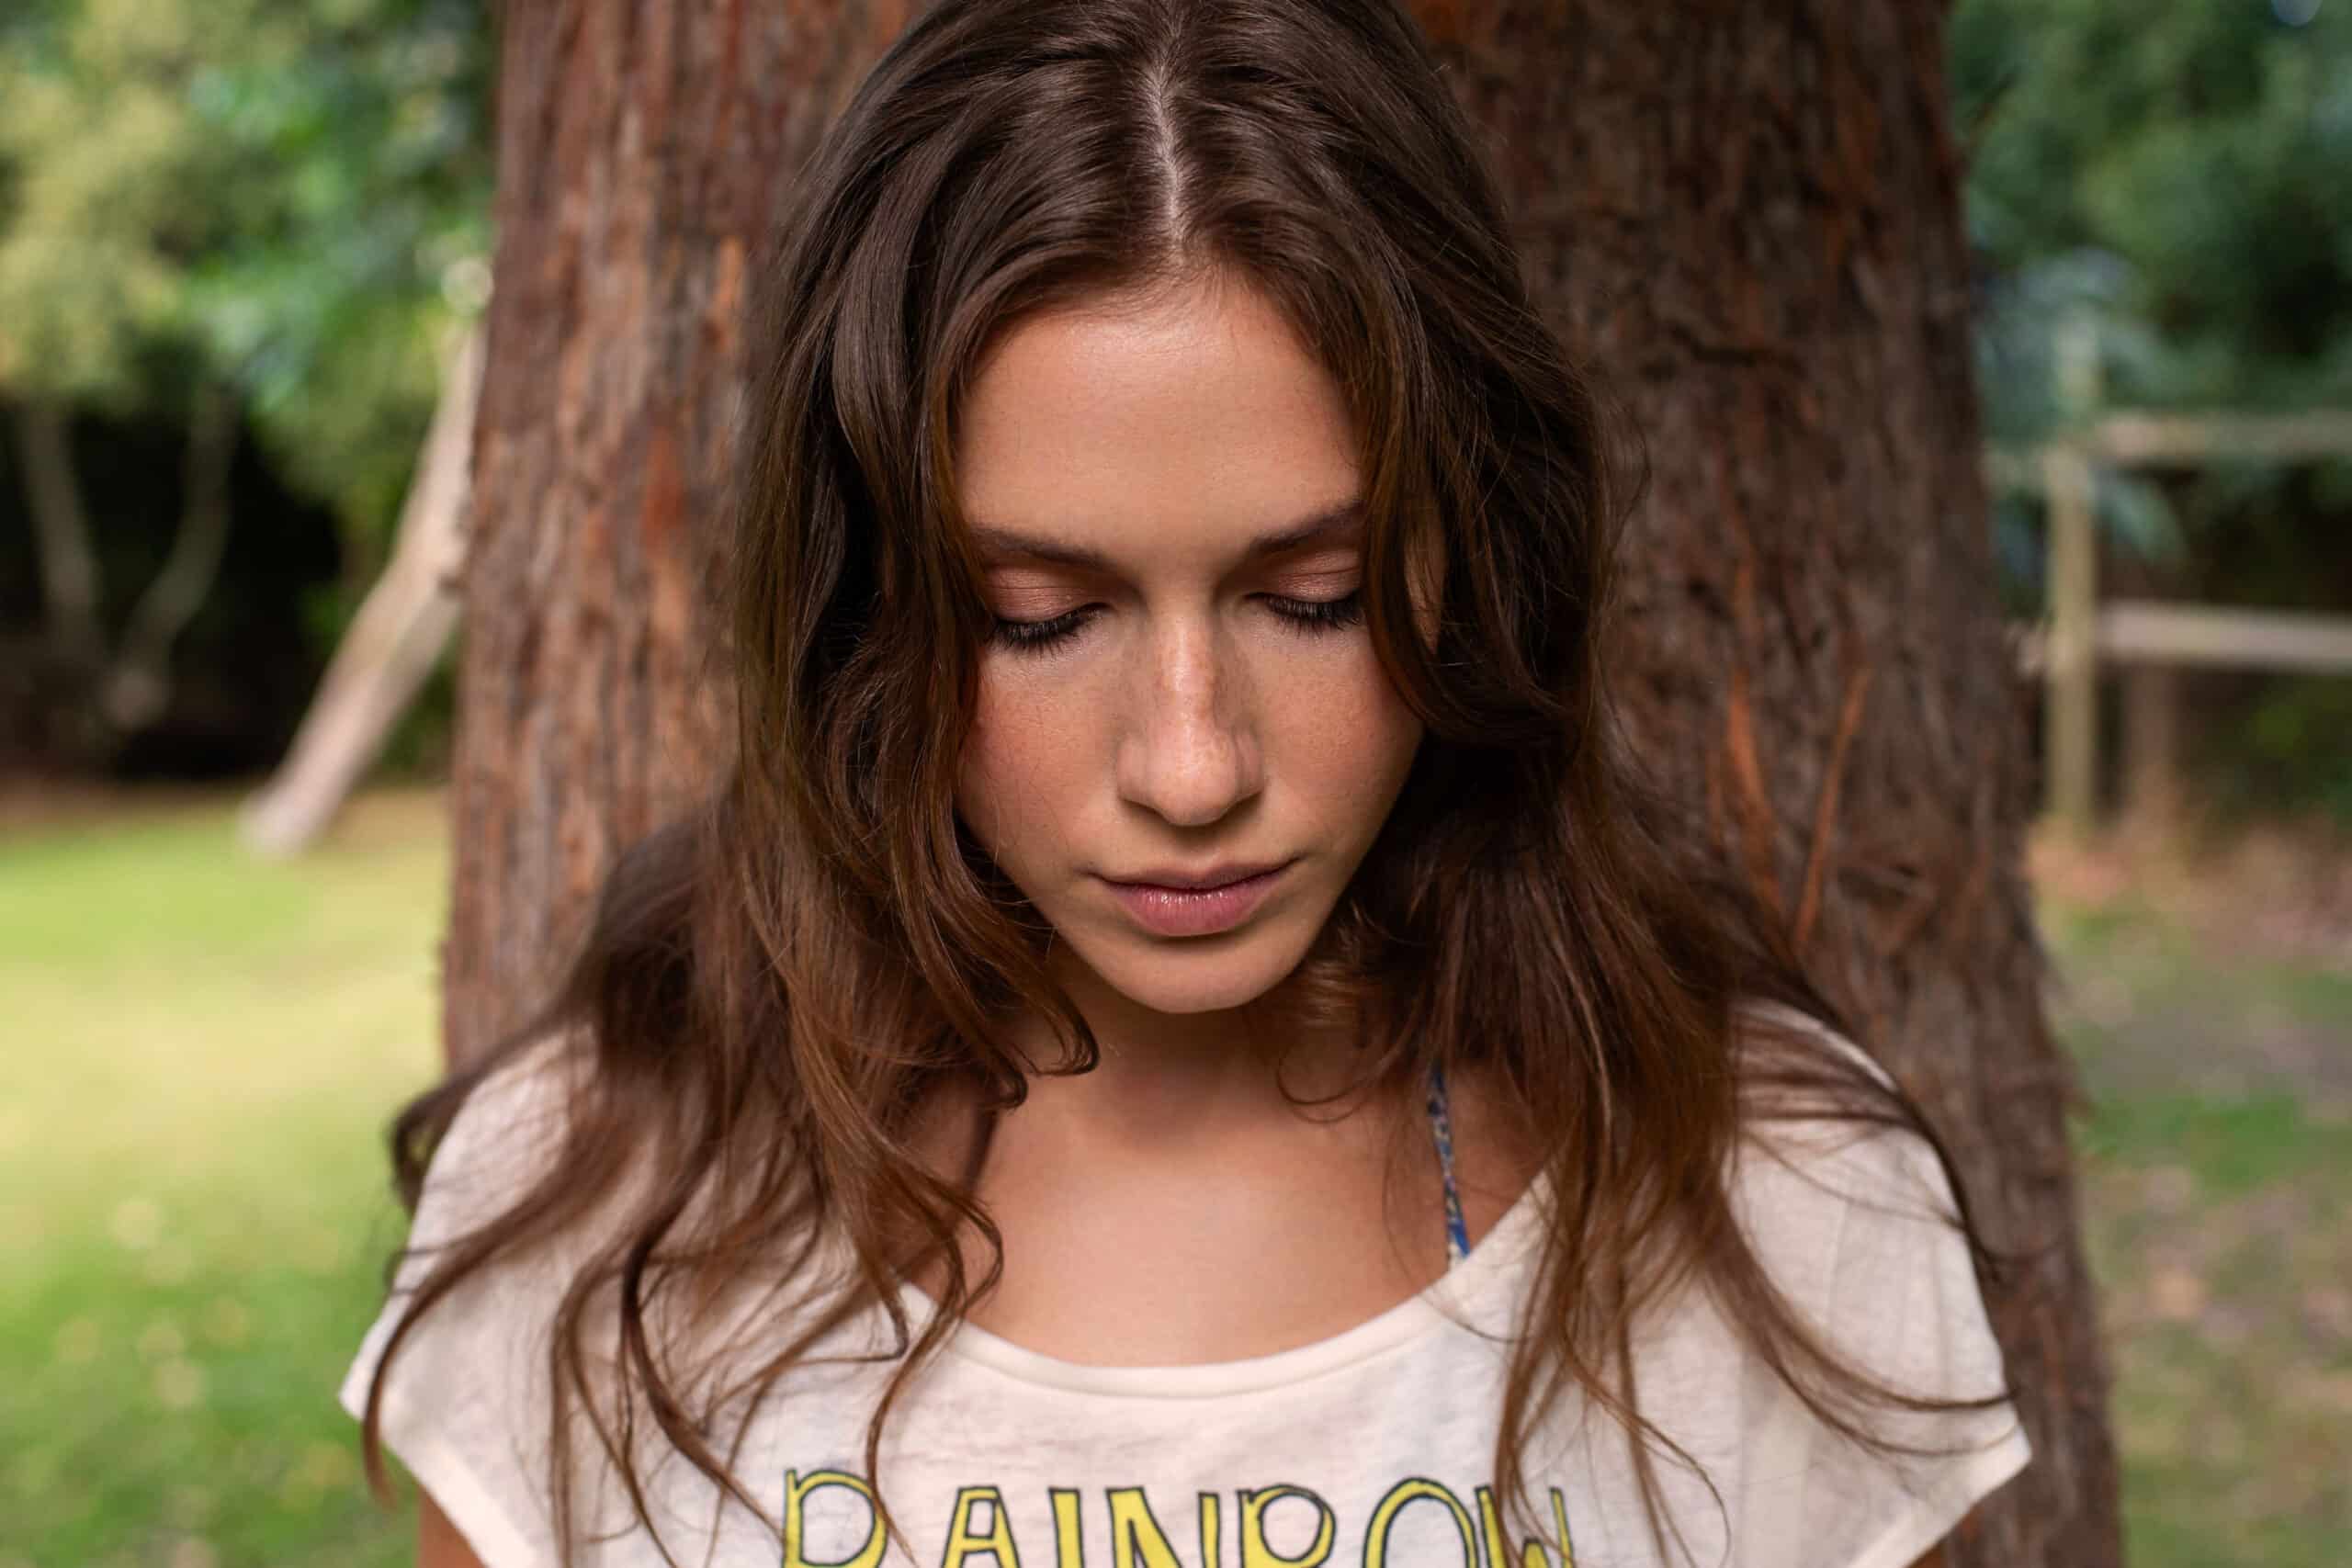 Eine junge Frau mit langen braunen Haaren und einem T-Shirt mit dem Aufdruck „Regenbogen“ steht mit geschlossenen Augen an einem Baumstamm in einem üppigen, grünen Park. © Fotografie Tomas Rodriguez